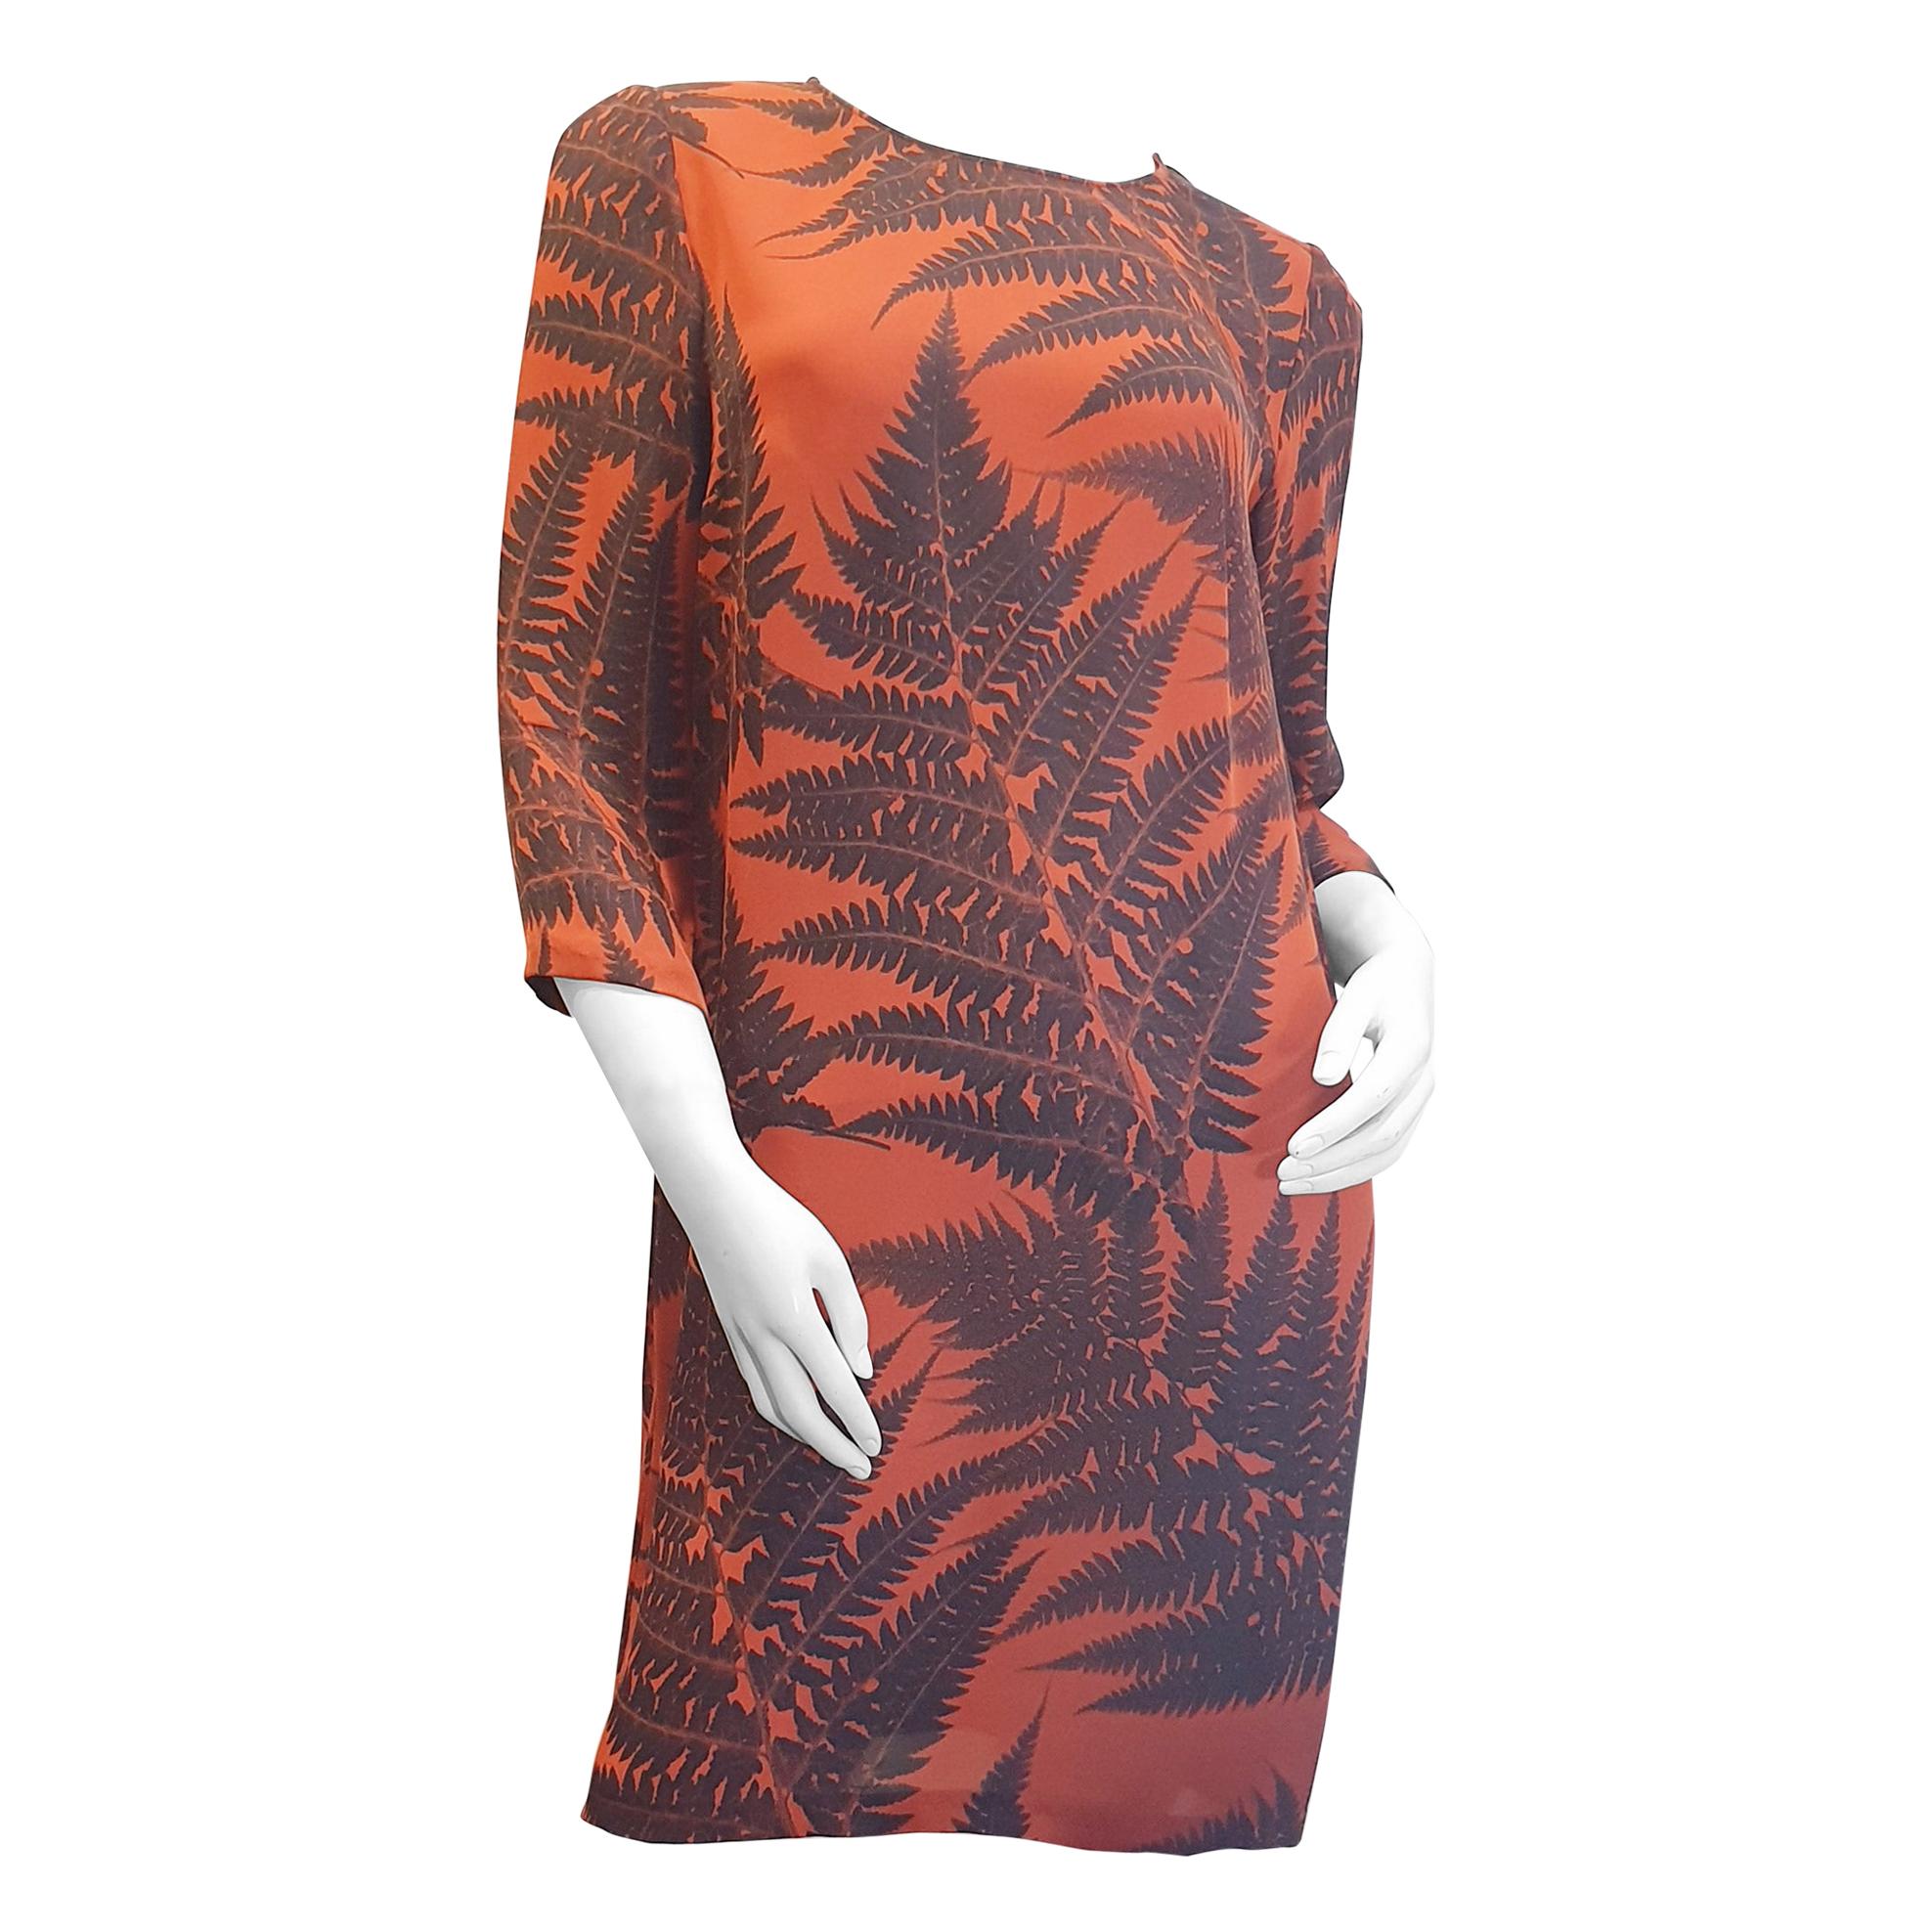 Stella McCartney Robe de cocktail en soie à motifs végétaux tropicaux de couleurs orange et marron